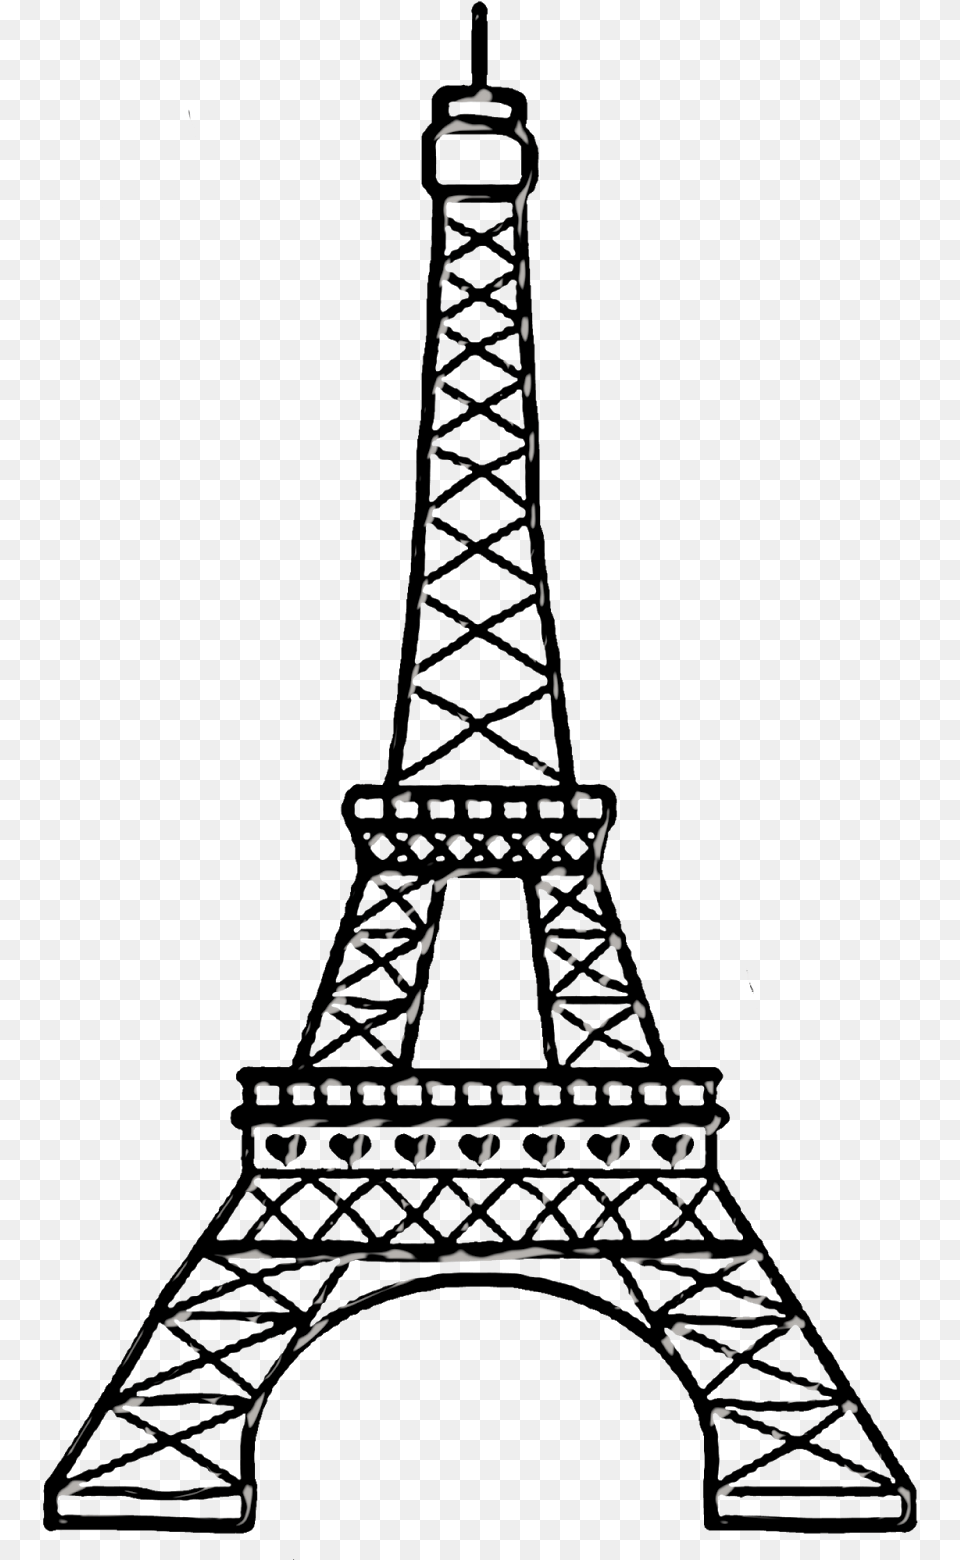 Paris Black Clipart Torre Eiffel Para Dibujar, Architecture, Building, Spire, Tower Free Png Download